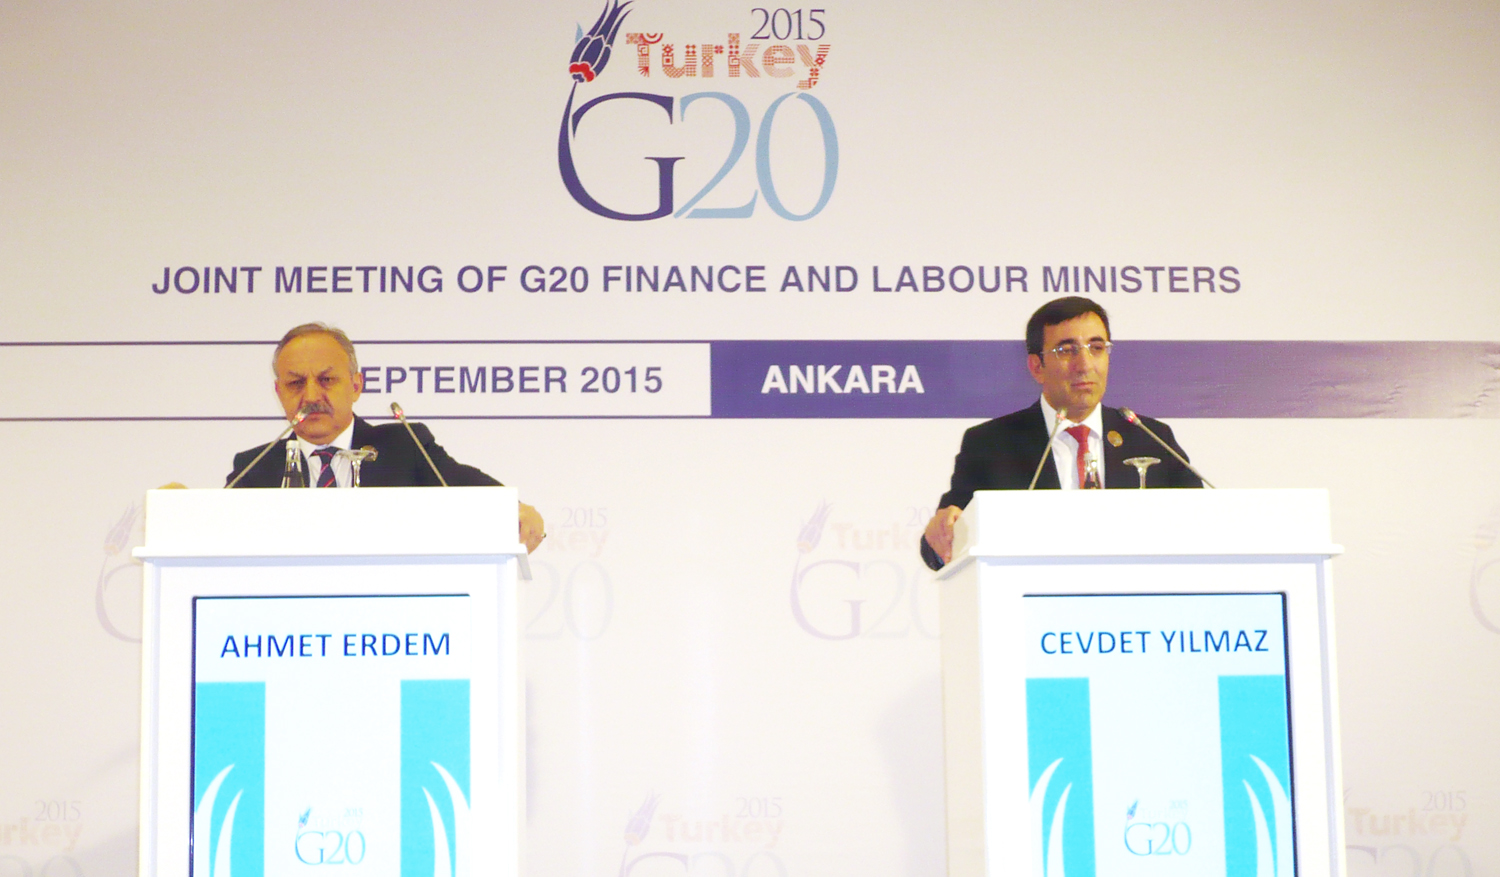 نائب رئيس الوزراء التركي جودت يلماز ووزير العمل احمد ايرديم في المؤتمر الصحفي